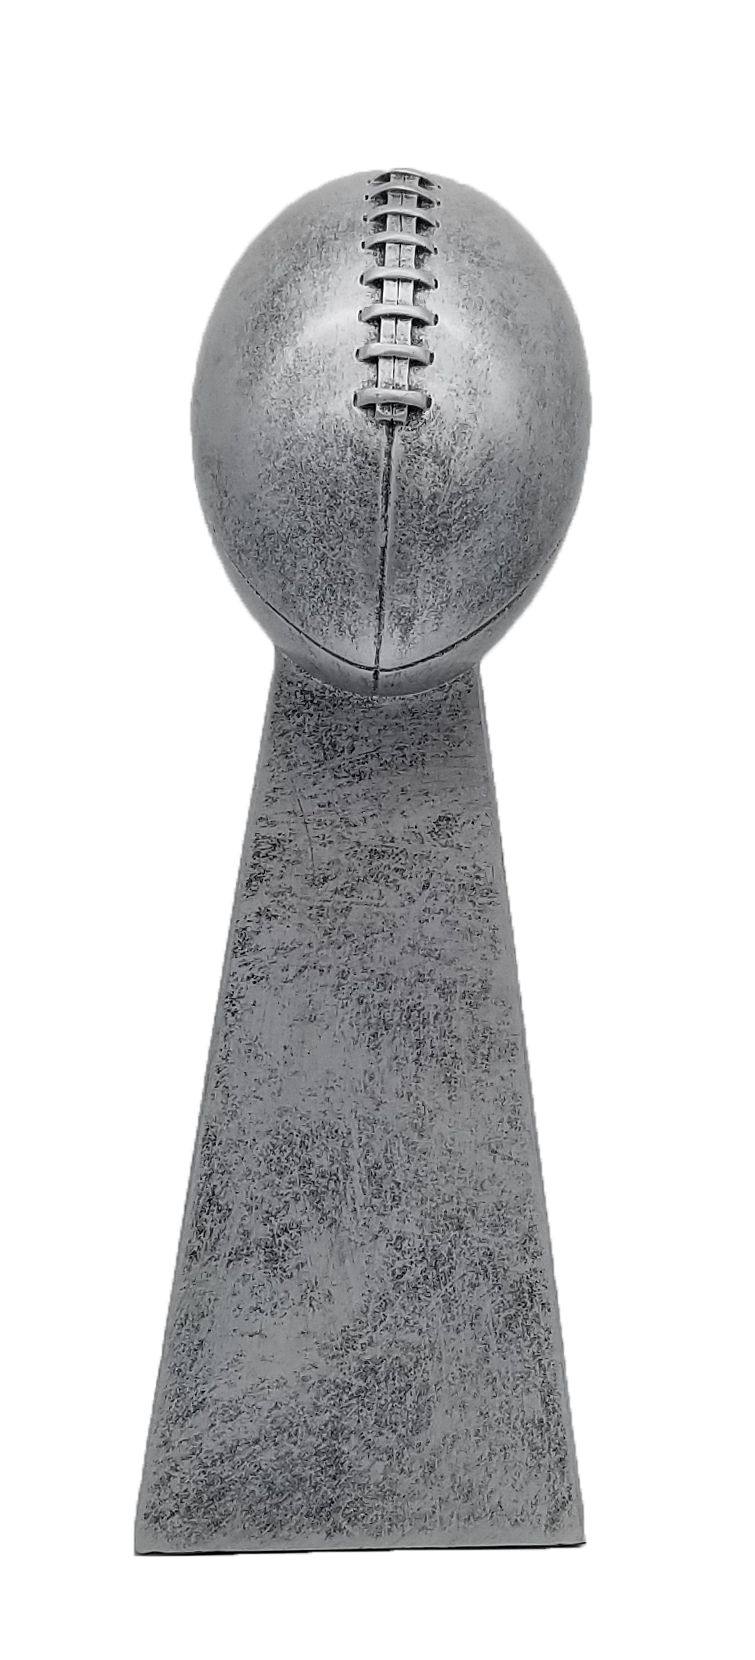 Football Trophy Heavyweight Sculpture Silver 19cm (7.5)